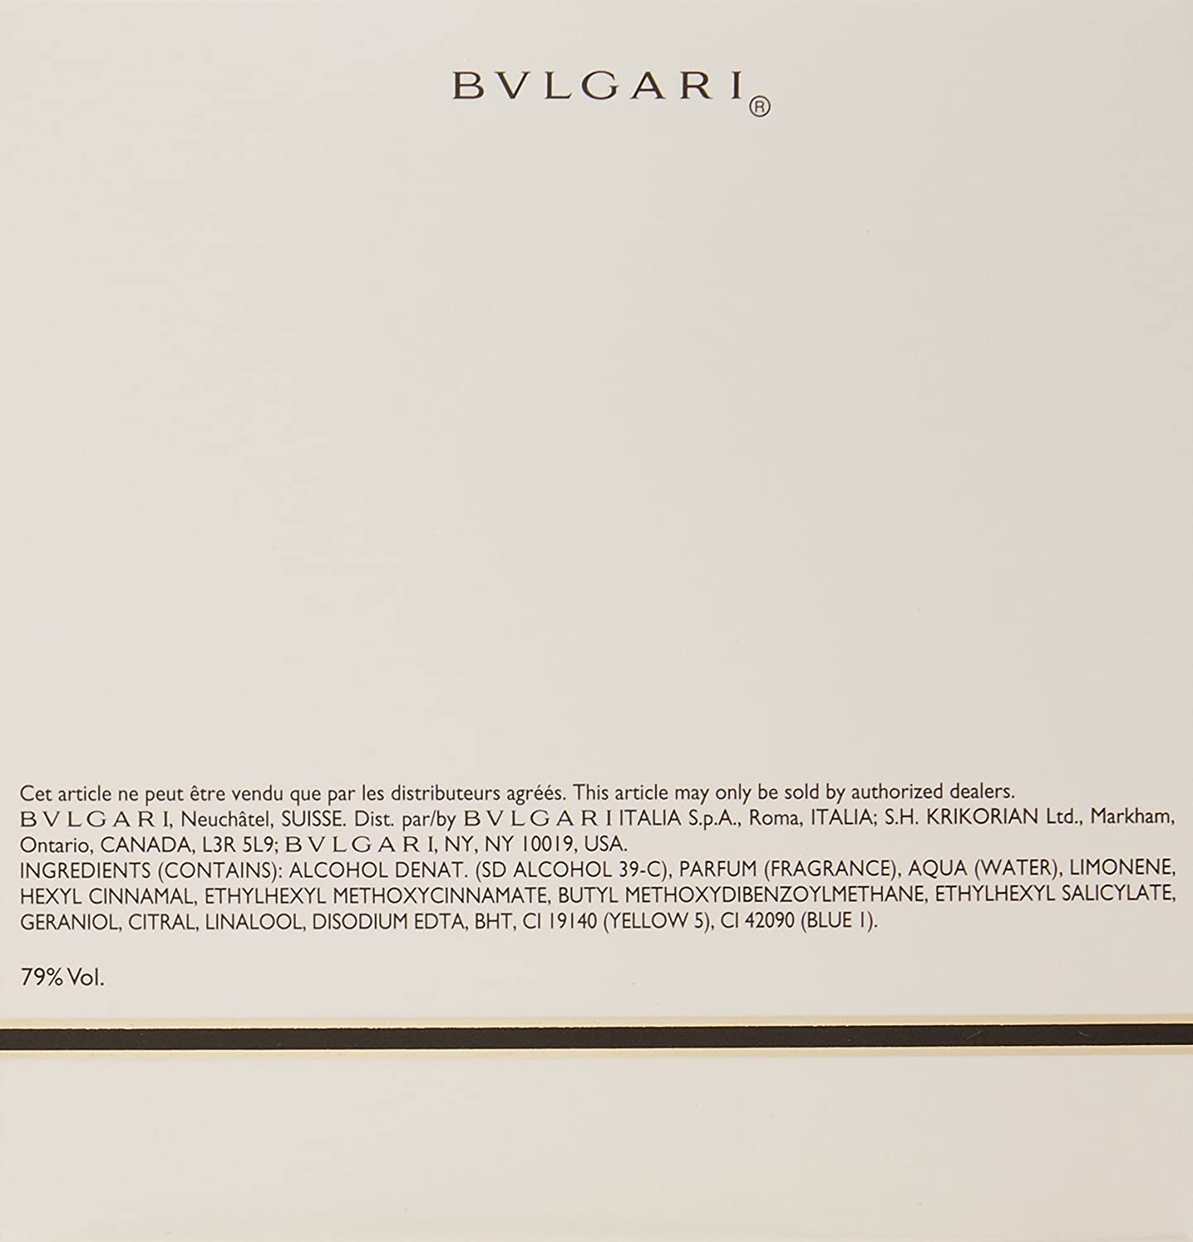 BVLGARI(ブルガリ) モン ジャスミンノワール オー エキスキーズ オードトワレの商品画像サムネ3 